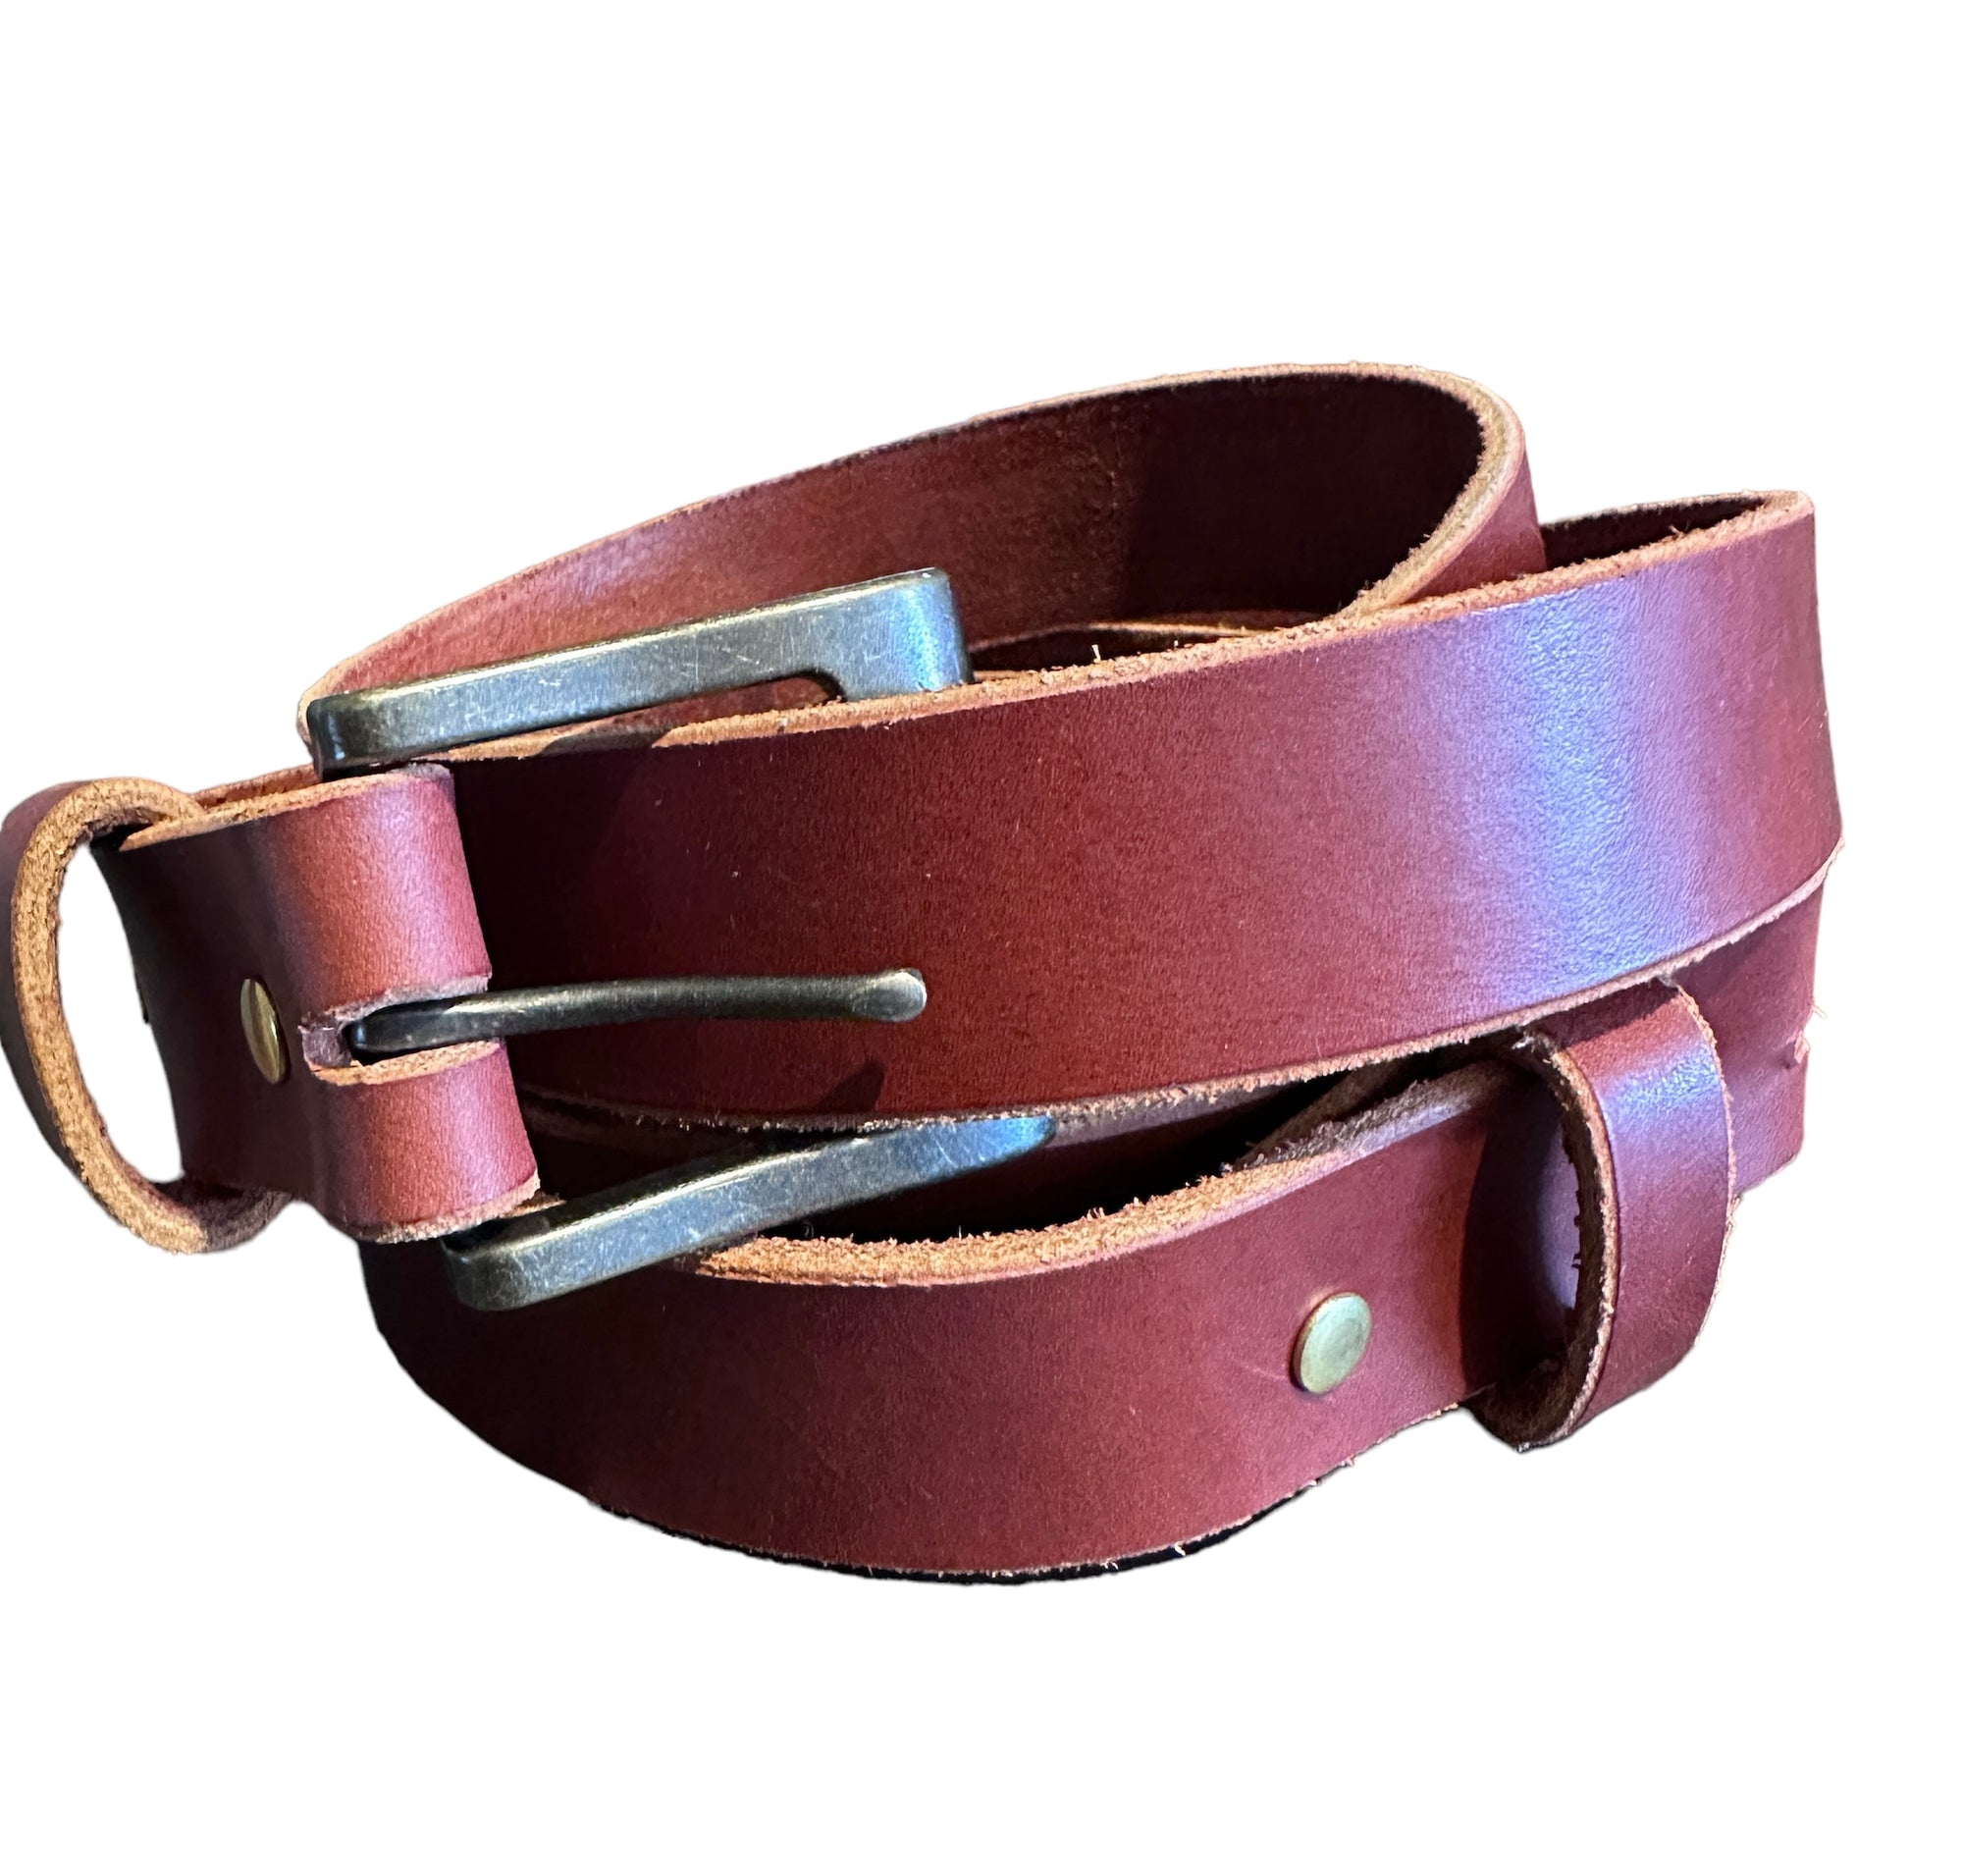 Sam Morris Leather Works - Belt - Rust - Matte Silver Buckle